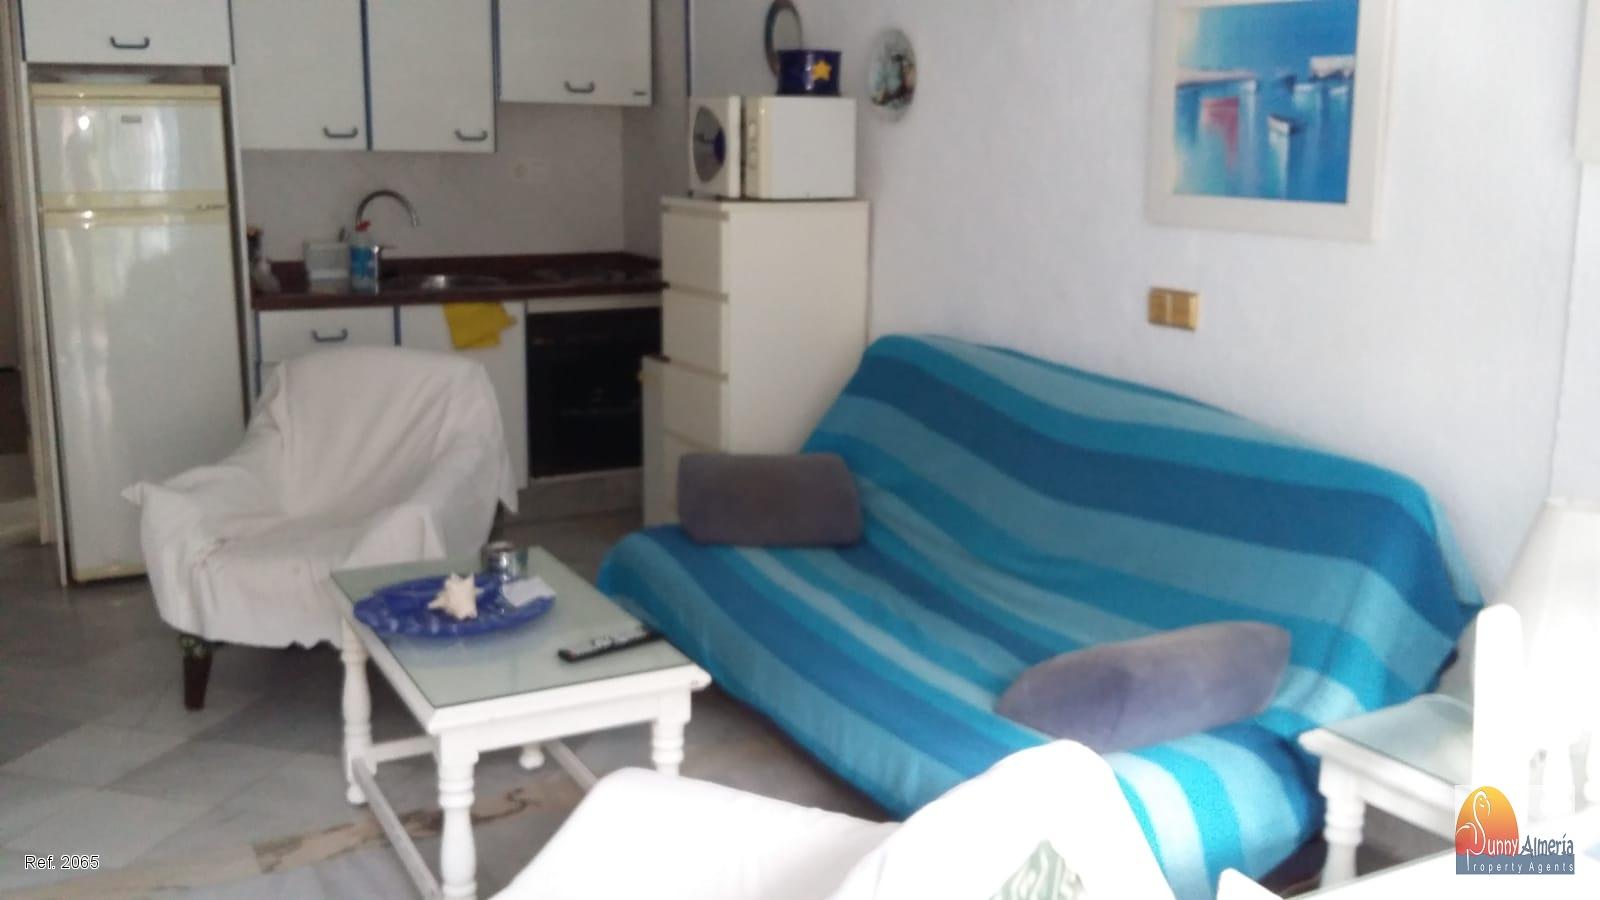 Lejlighed udlejes på lang tid I Avenida Entremares 112 (Roquetas de Mar), 700€/måned